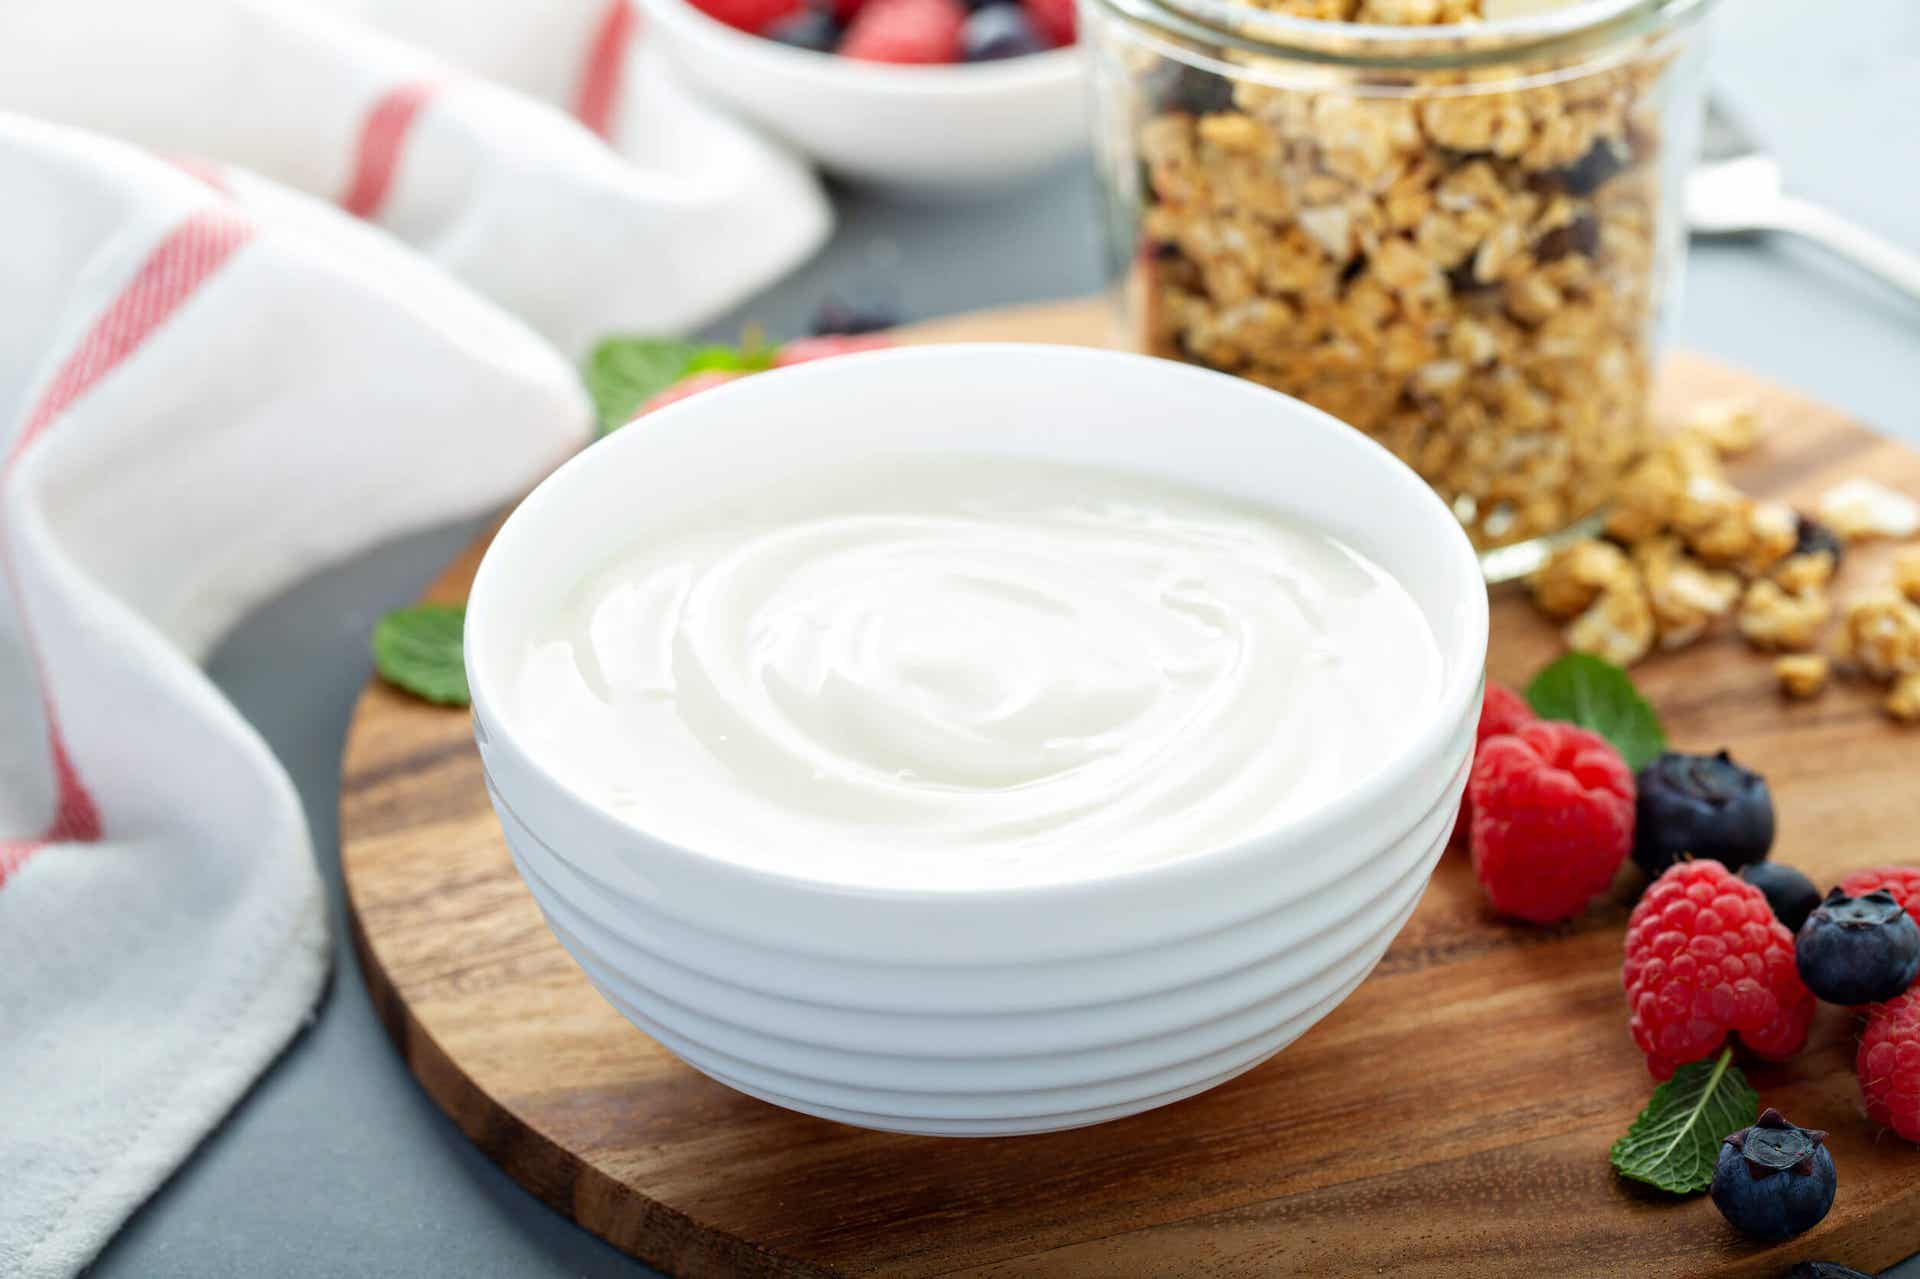 Las frambuesas pueden combinarse con yogur para hacer un delicioso postre.